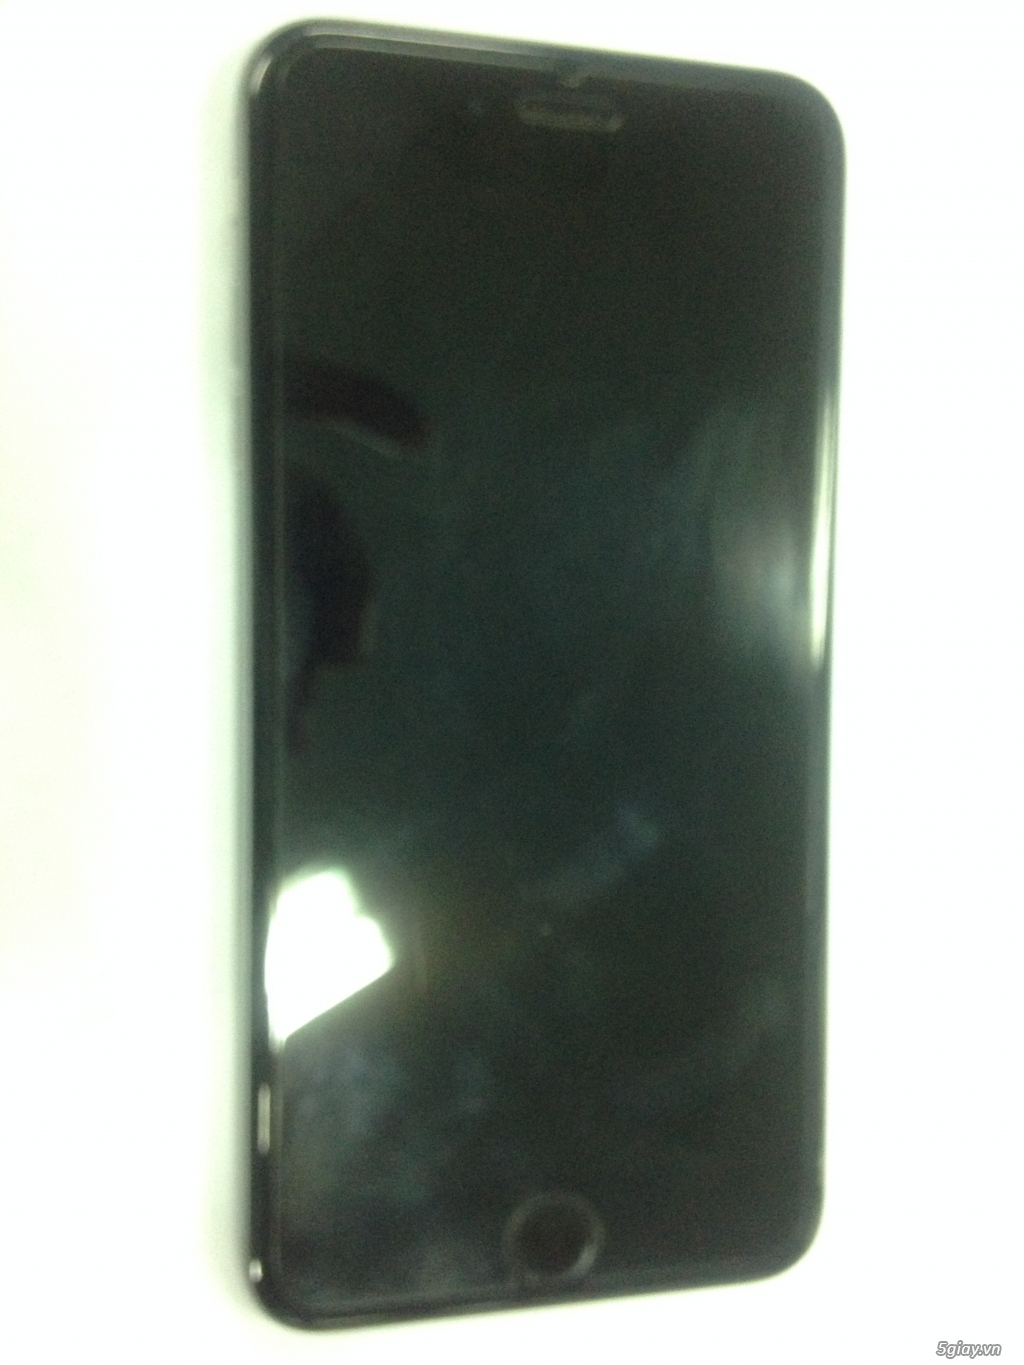 Bán Iphone 6 Plus 16 GB Gray hàng nguyên zin, bao xài xả ga giá 9.900k - 2